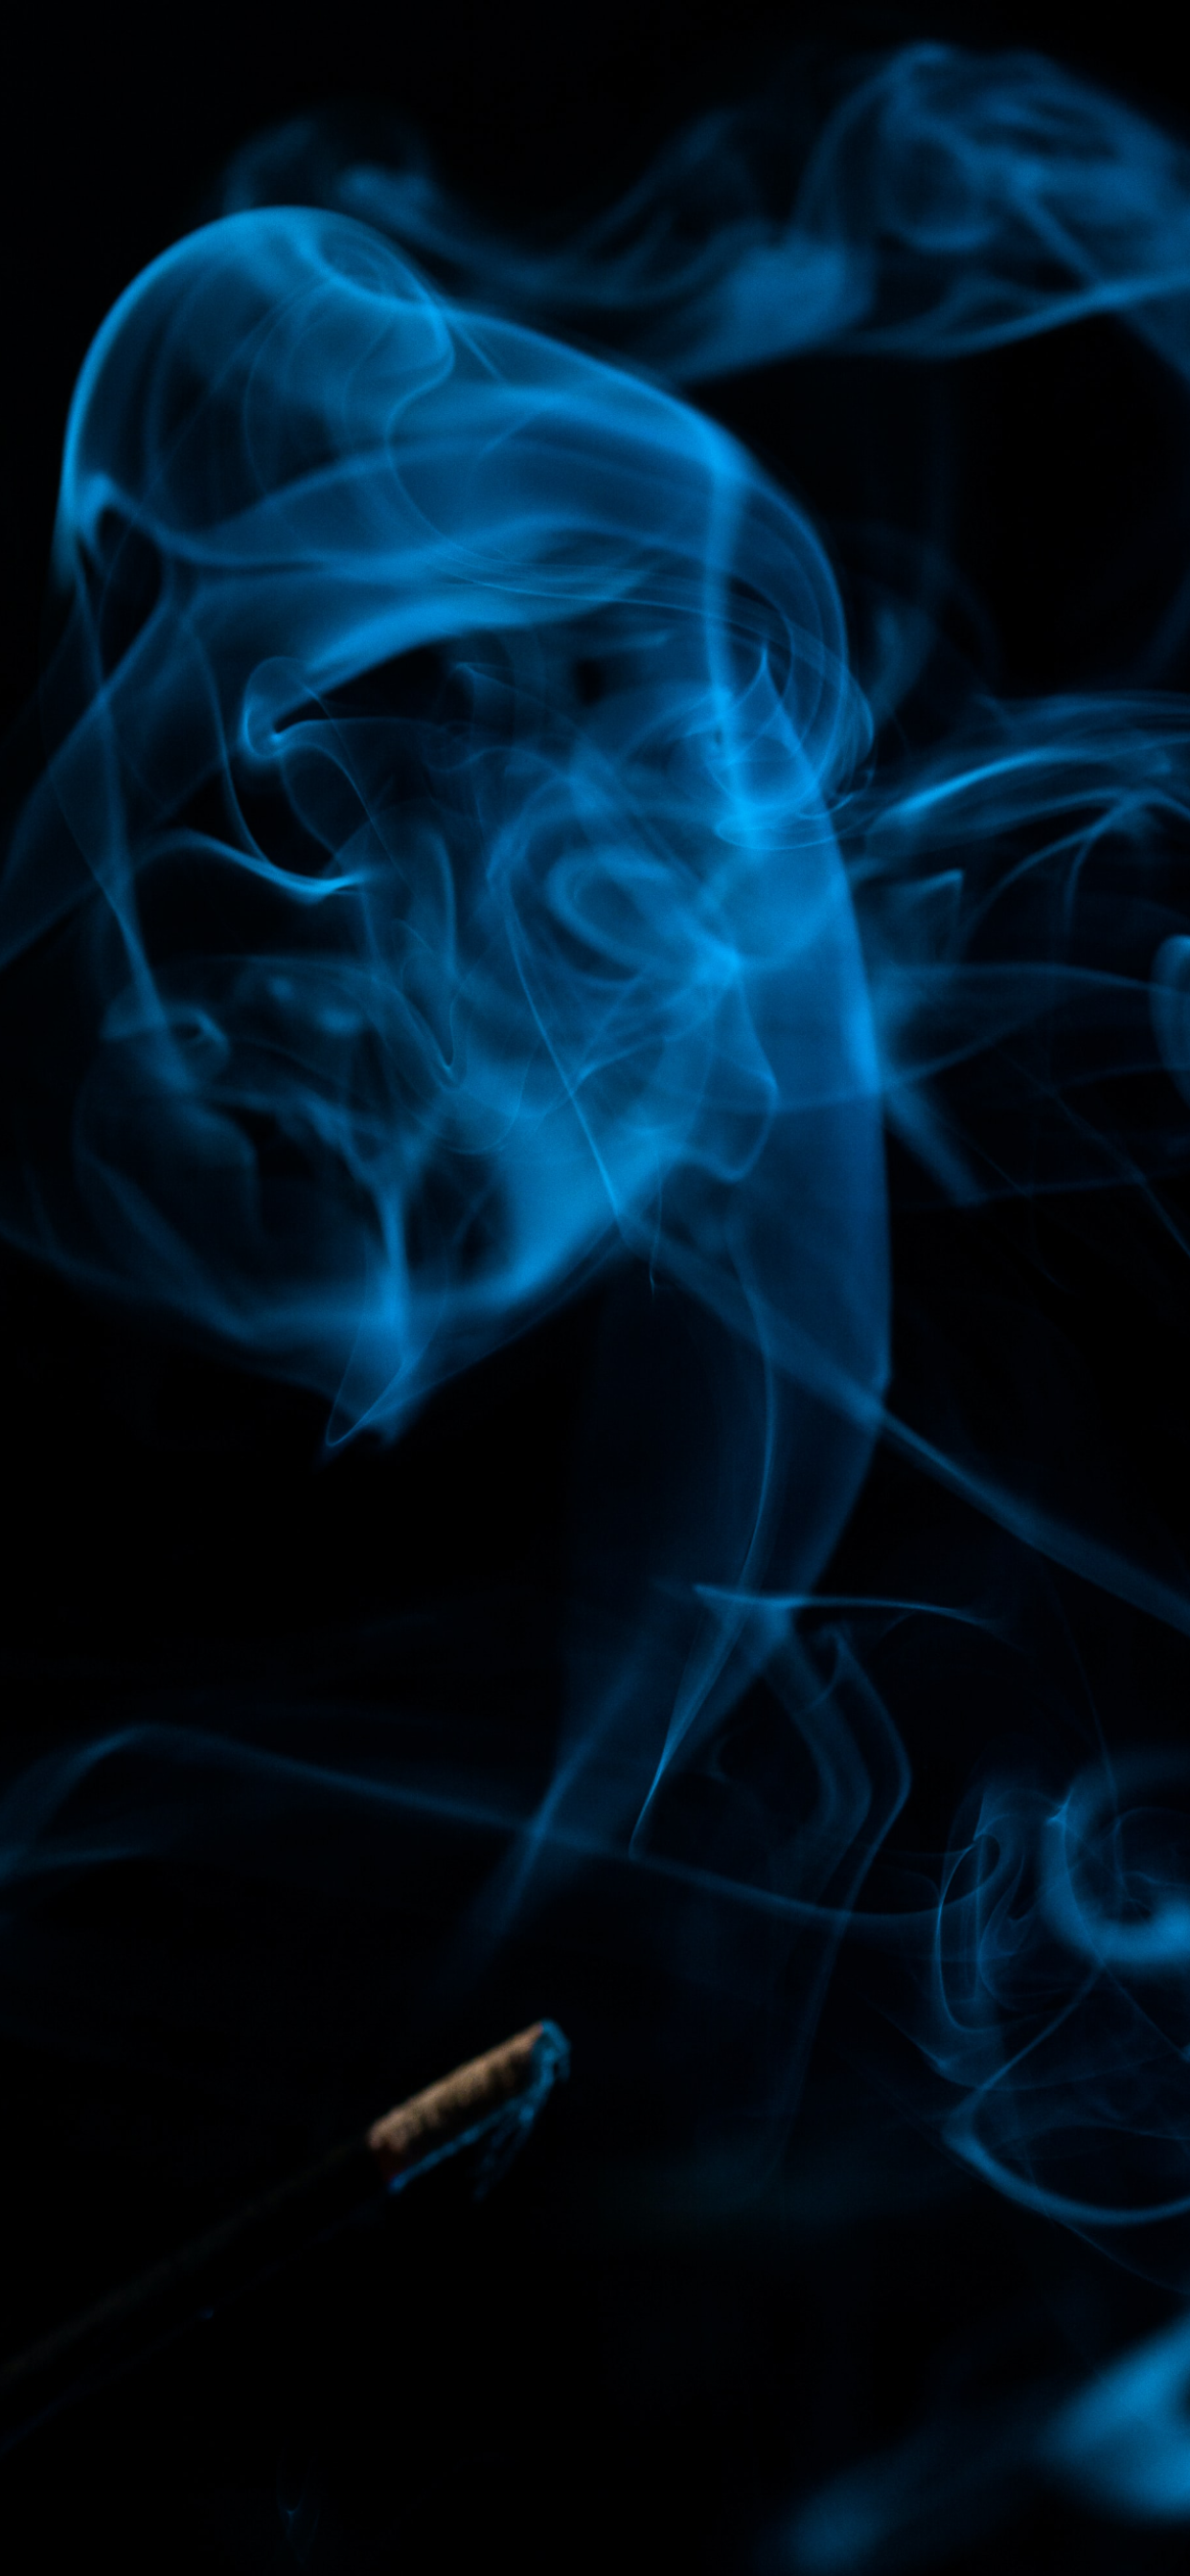 Smoke Wallpaper art: Free HD Download